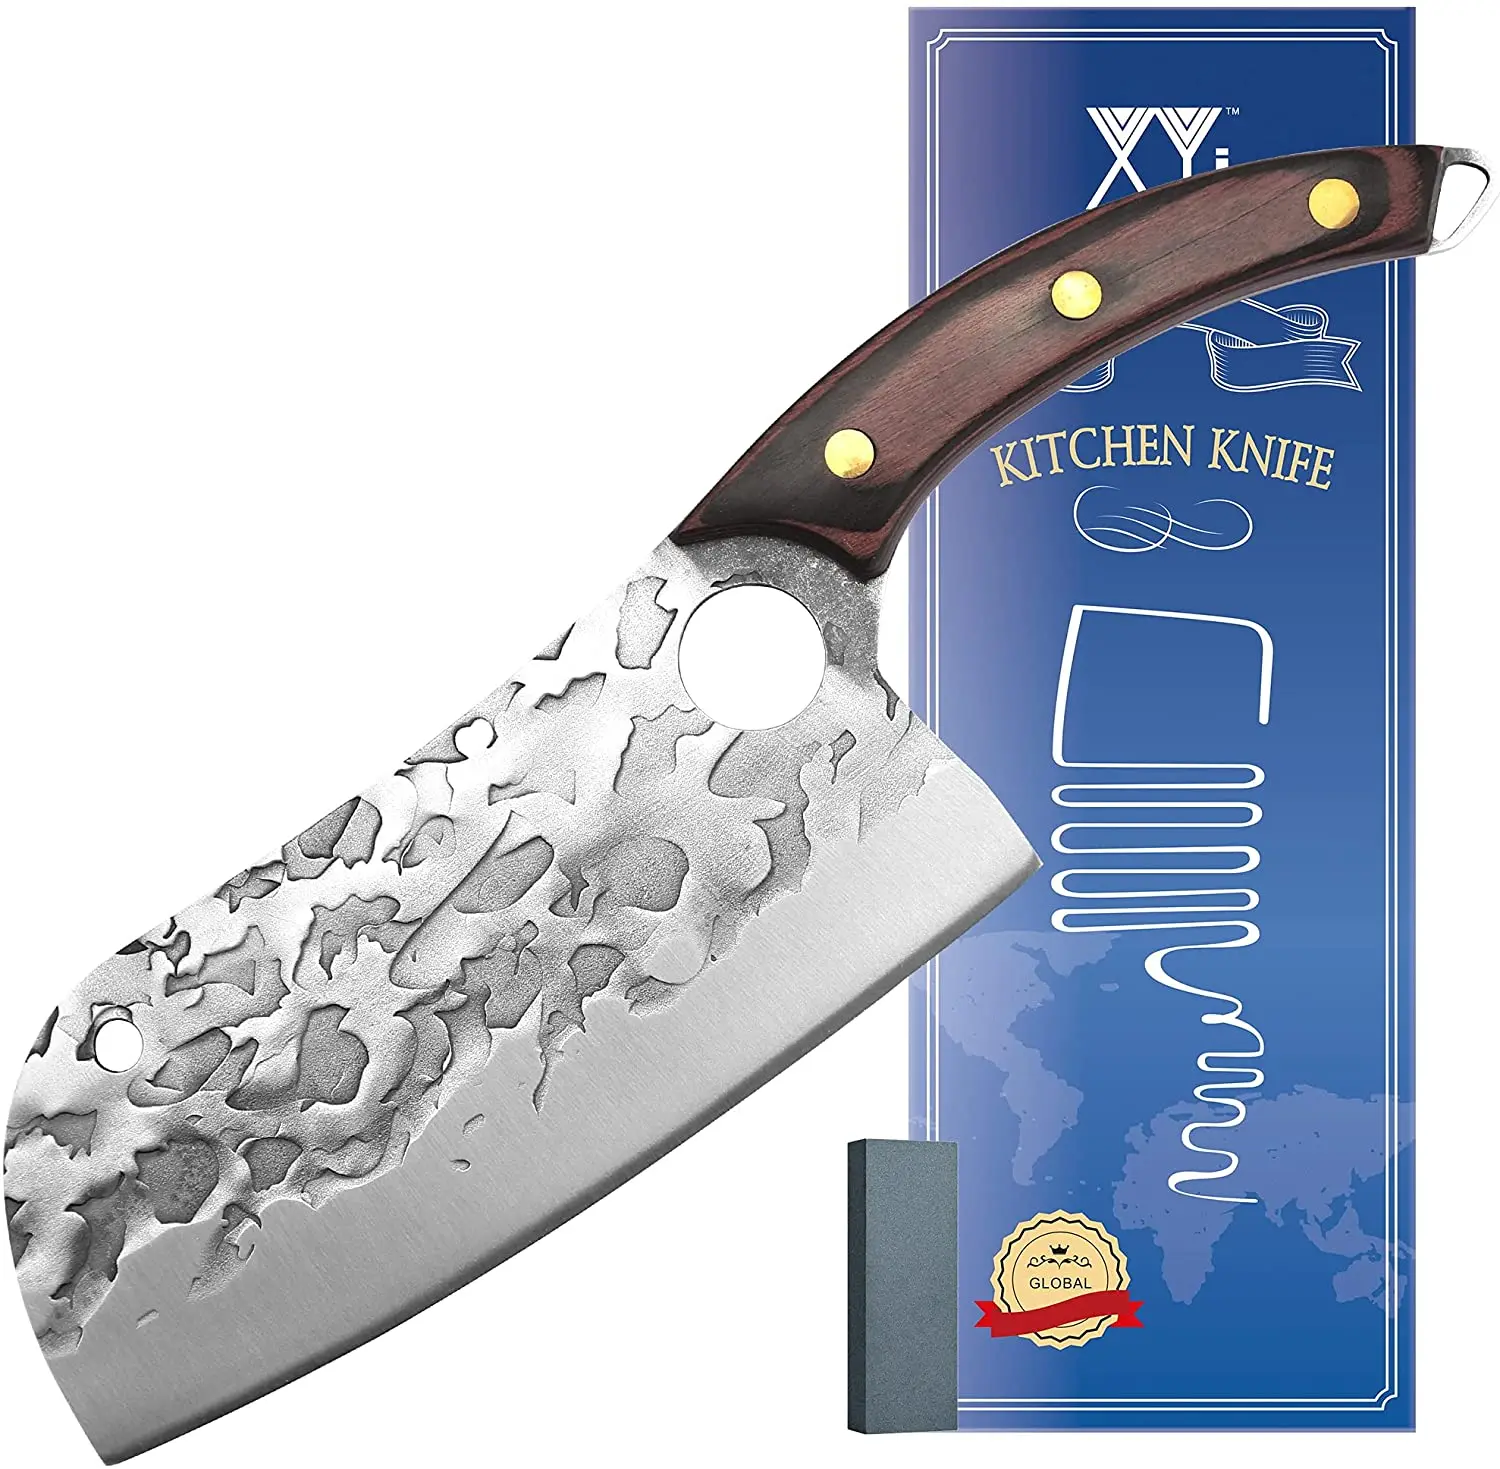 

XYJ Full Tang кухонный нож 7 дюймов мясной нож шеф-повара нож для мяса овощей Кливер из нержавеющей стали антипригарное лезвие с деревянной ручкой